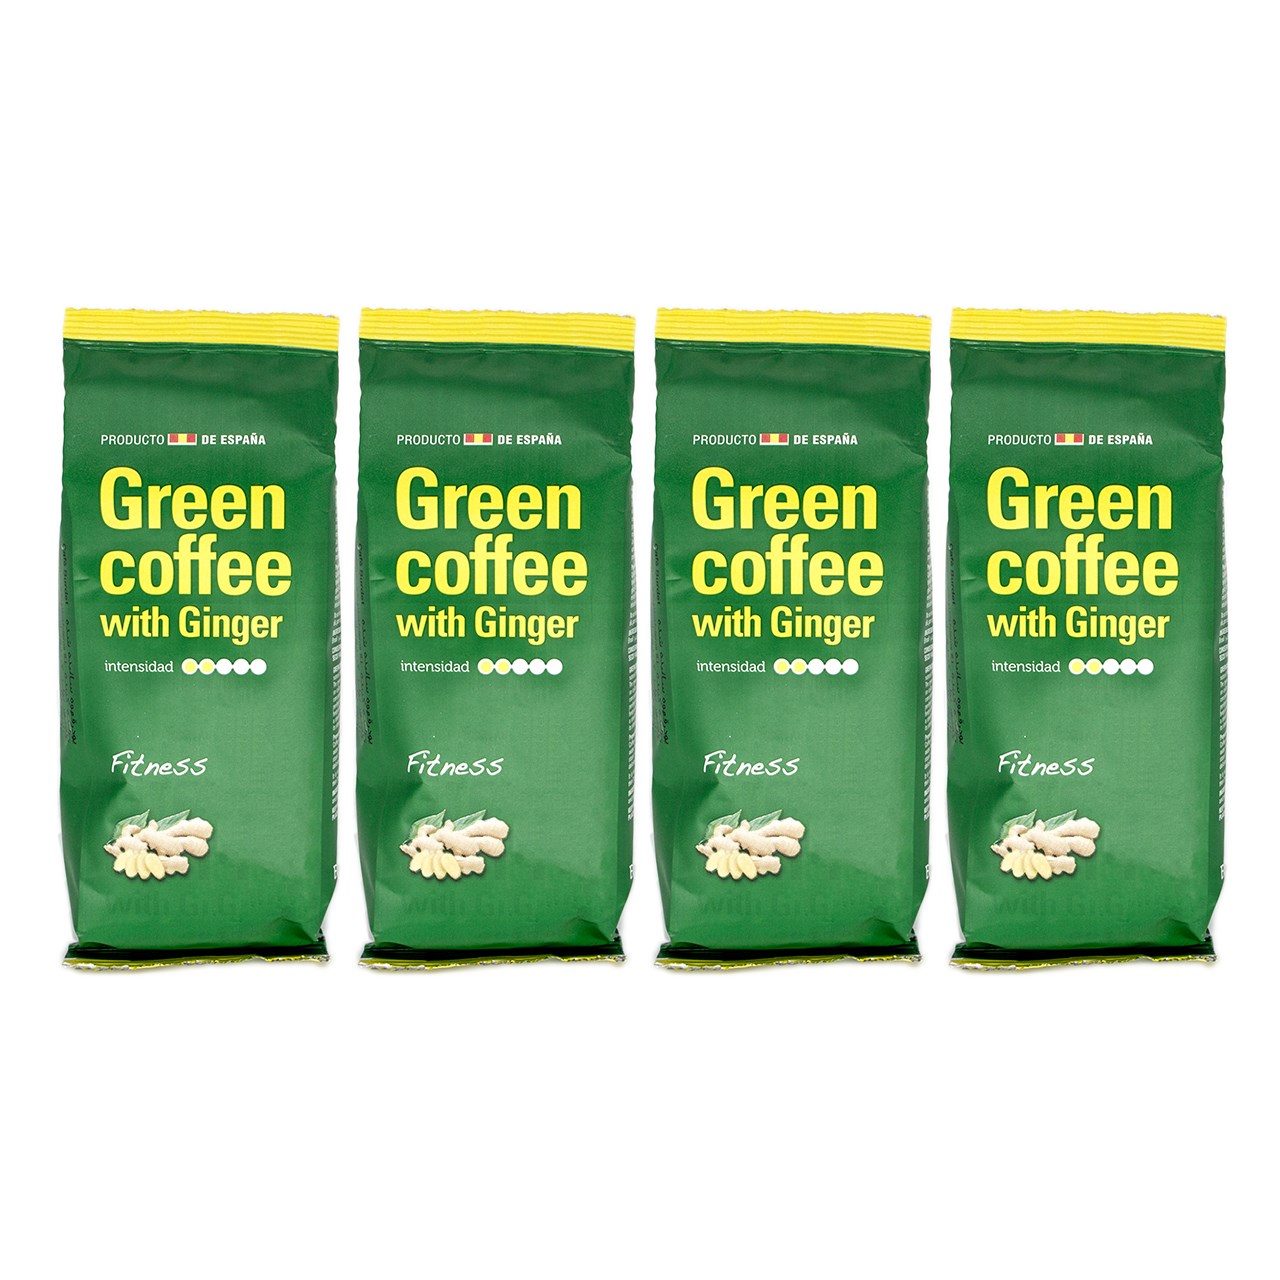 بسته قهوه کافی بوردت مدل Green Coffee With Ginger بسته 4 عددی